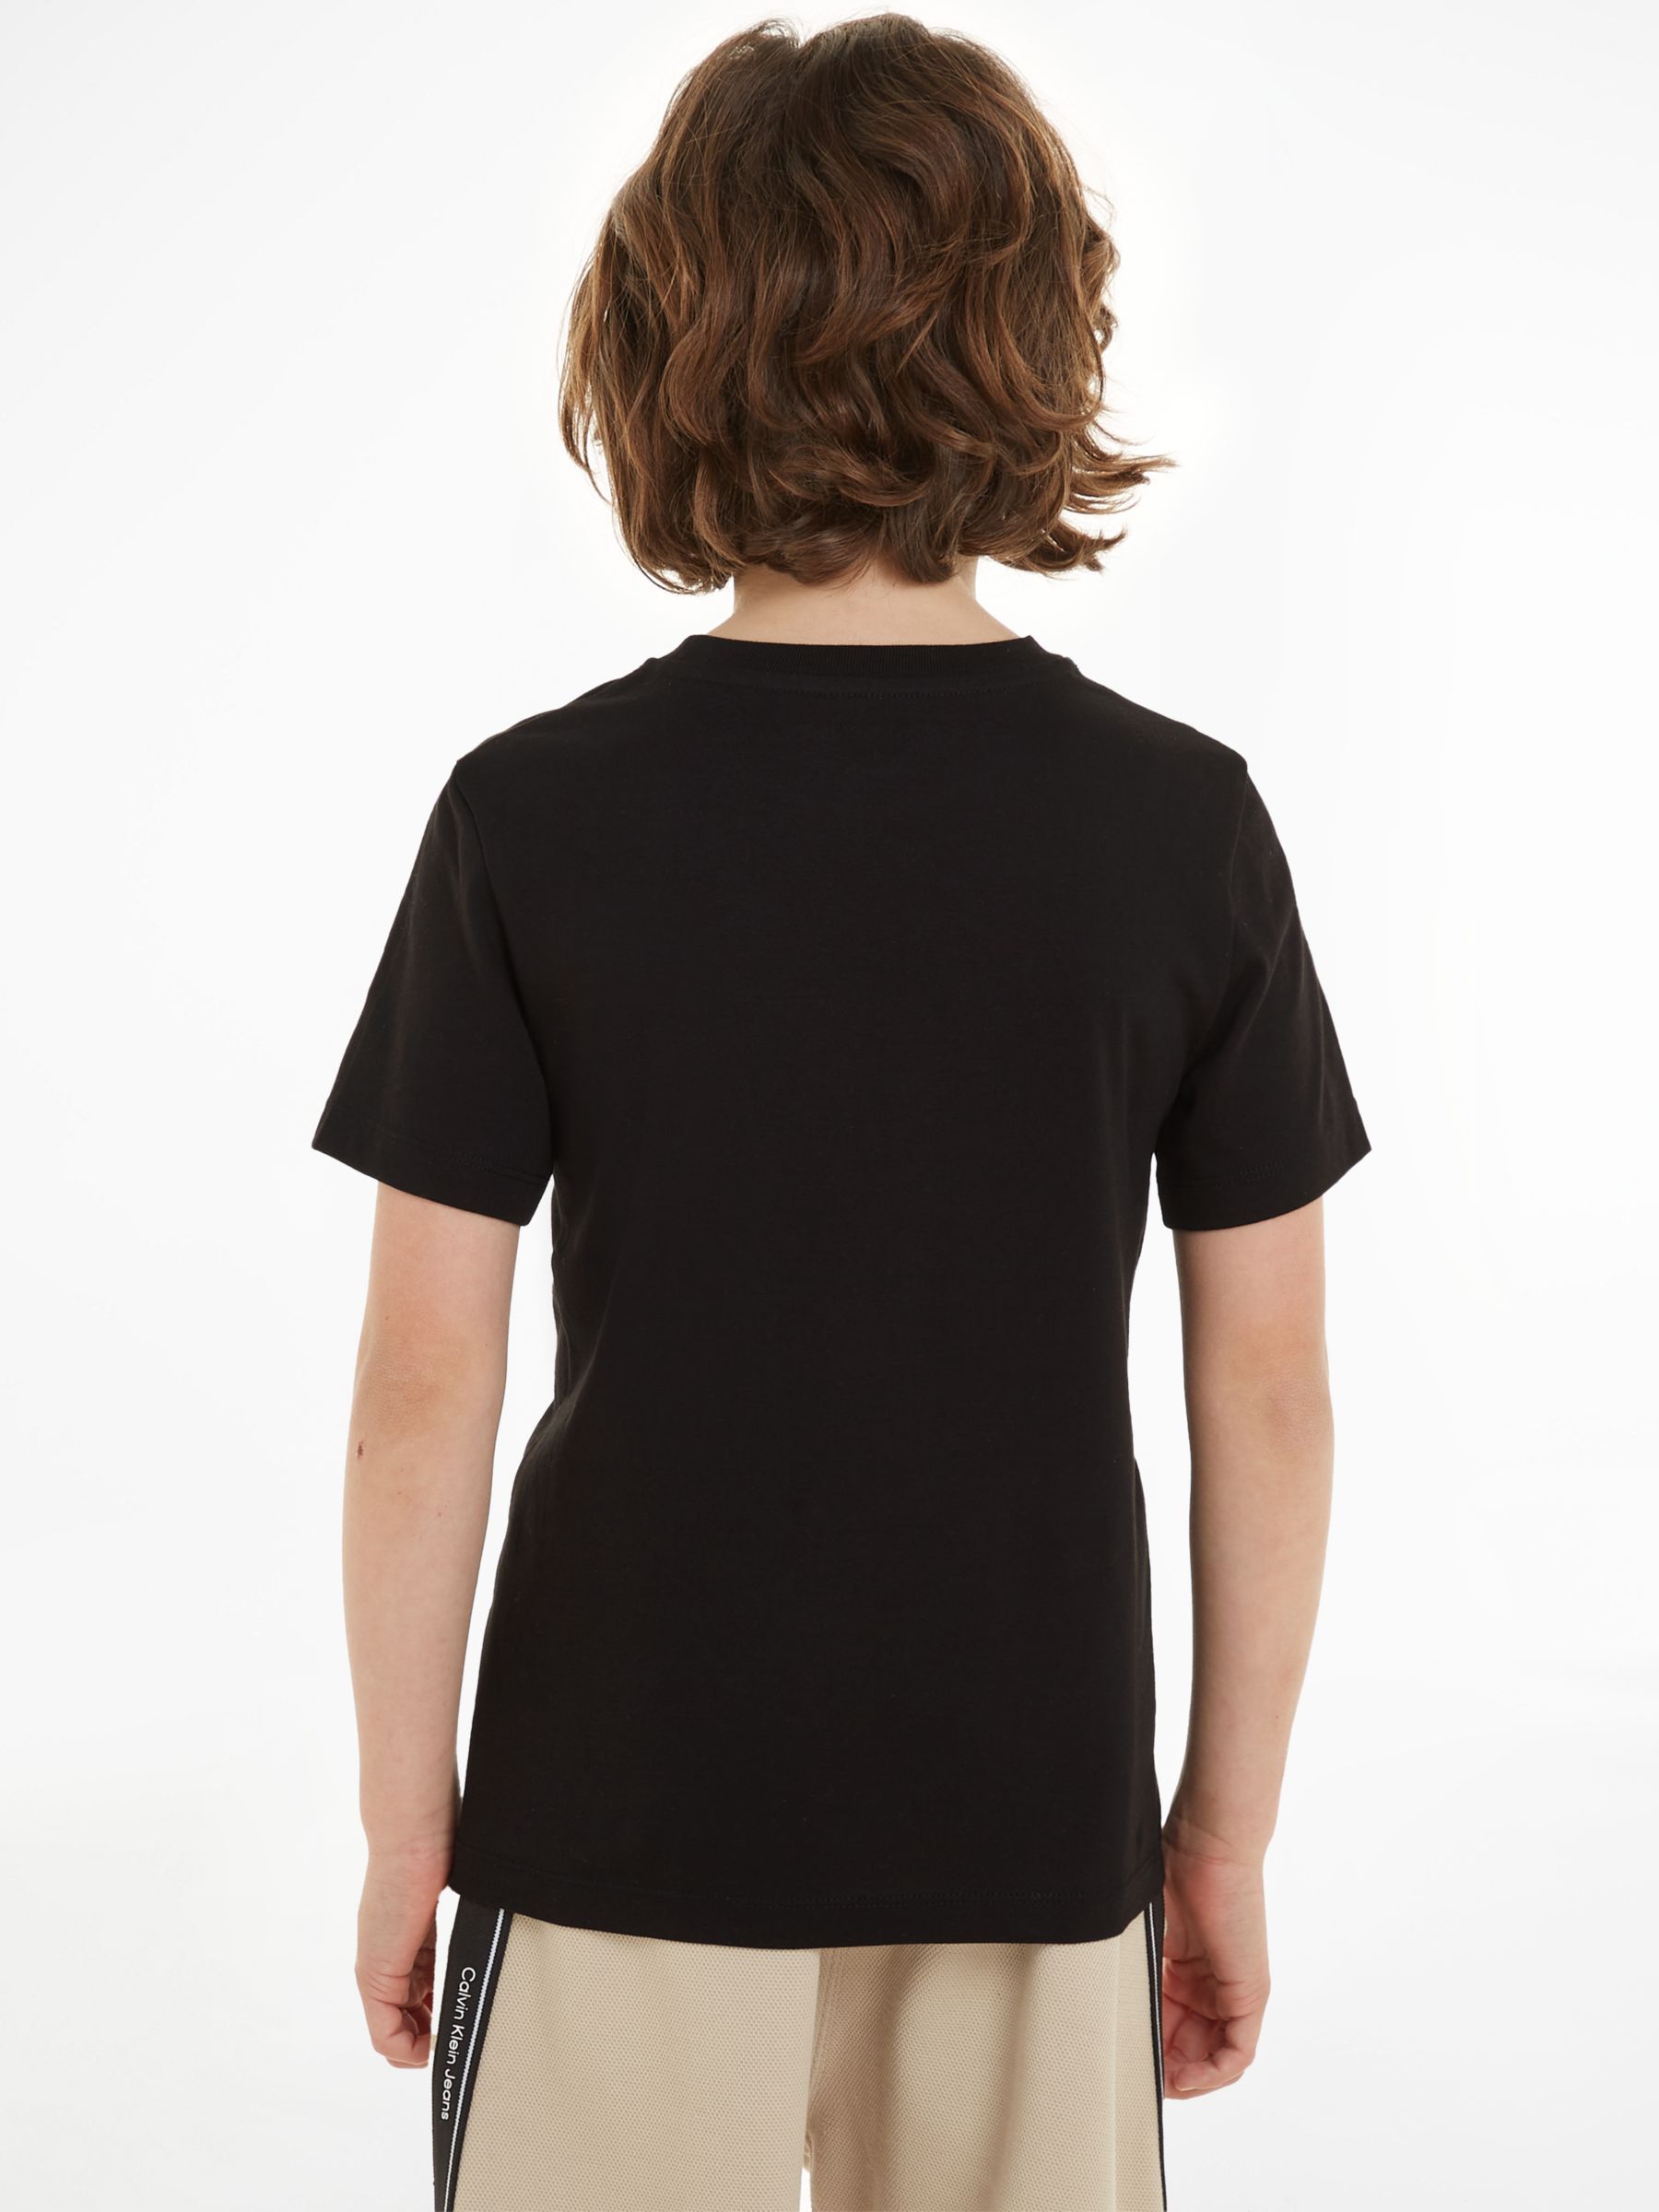 2, John Blue/Ck Pack Calvin Cotton Keepsake Black T-Shirts, Sleeve of Monogram at Lewis Short Partners Kids\' & Klein